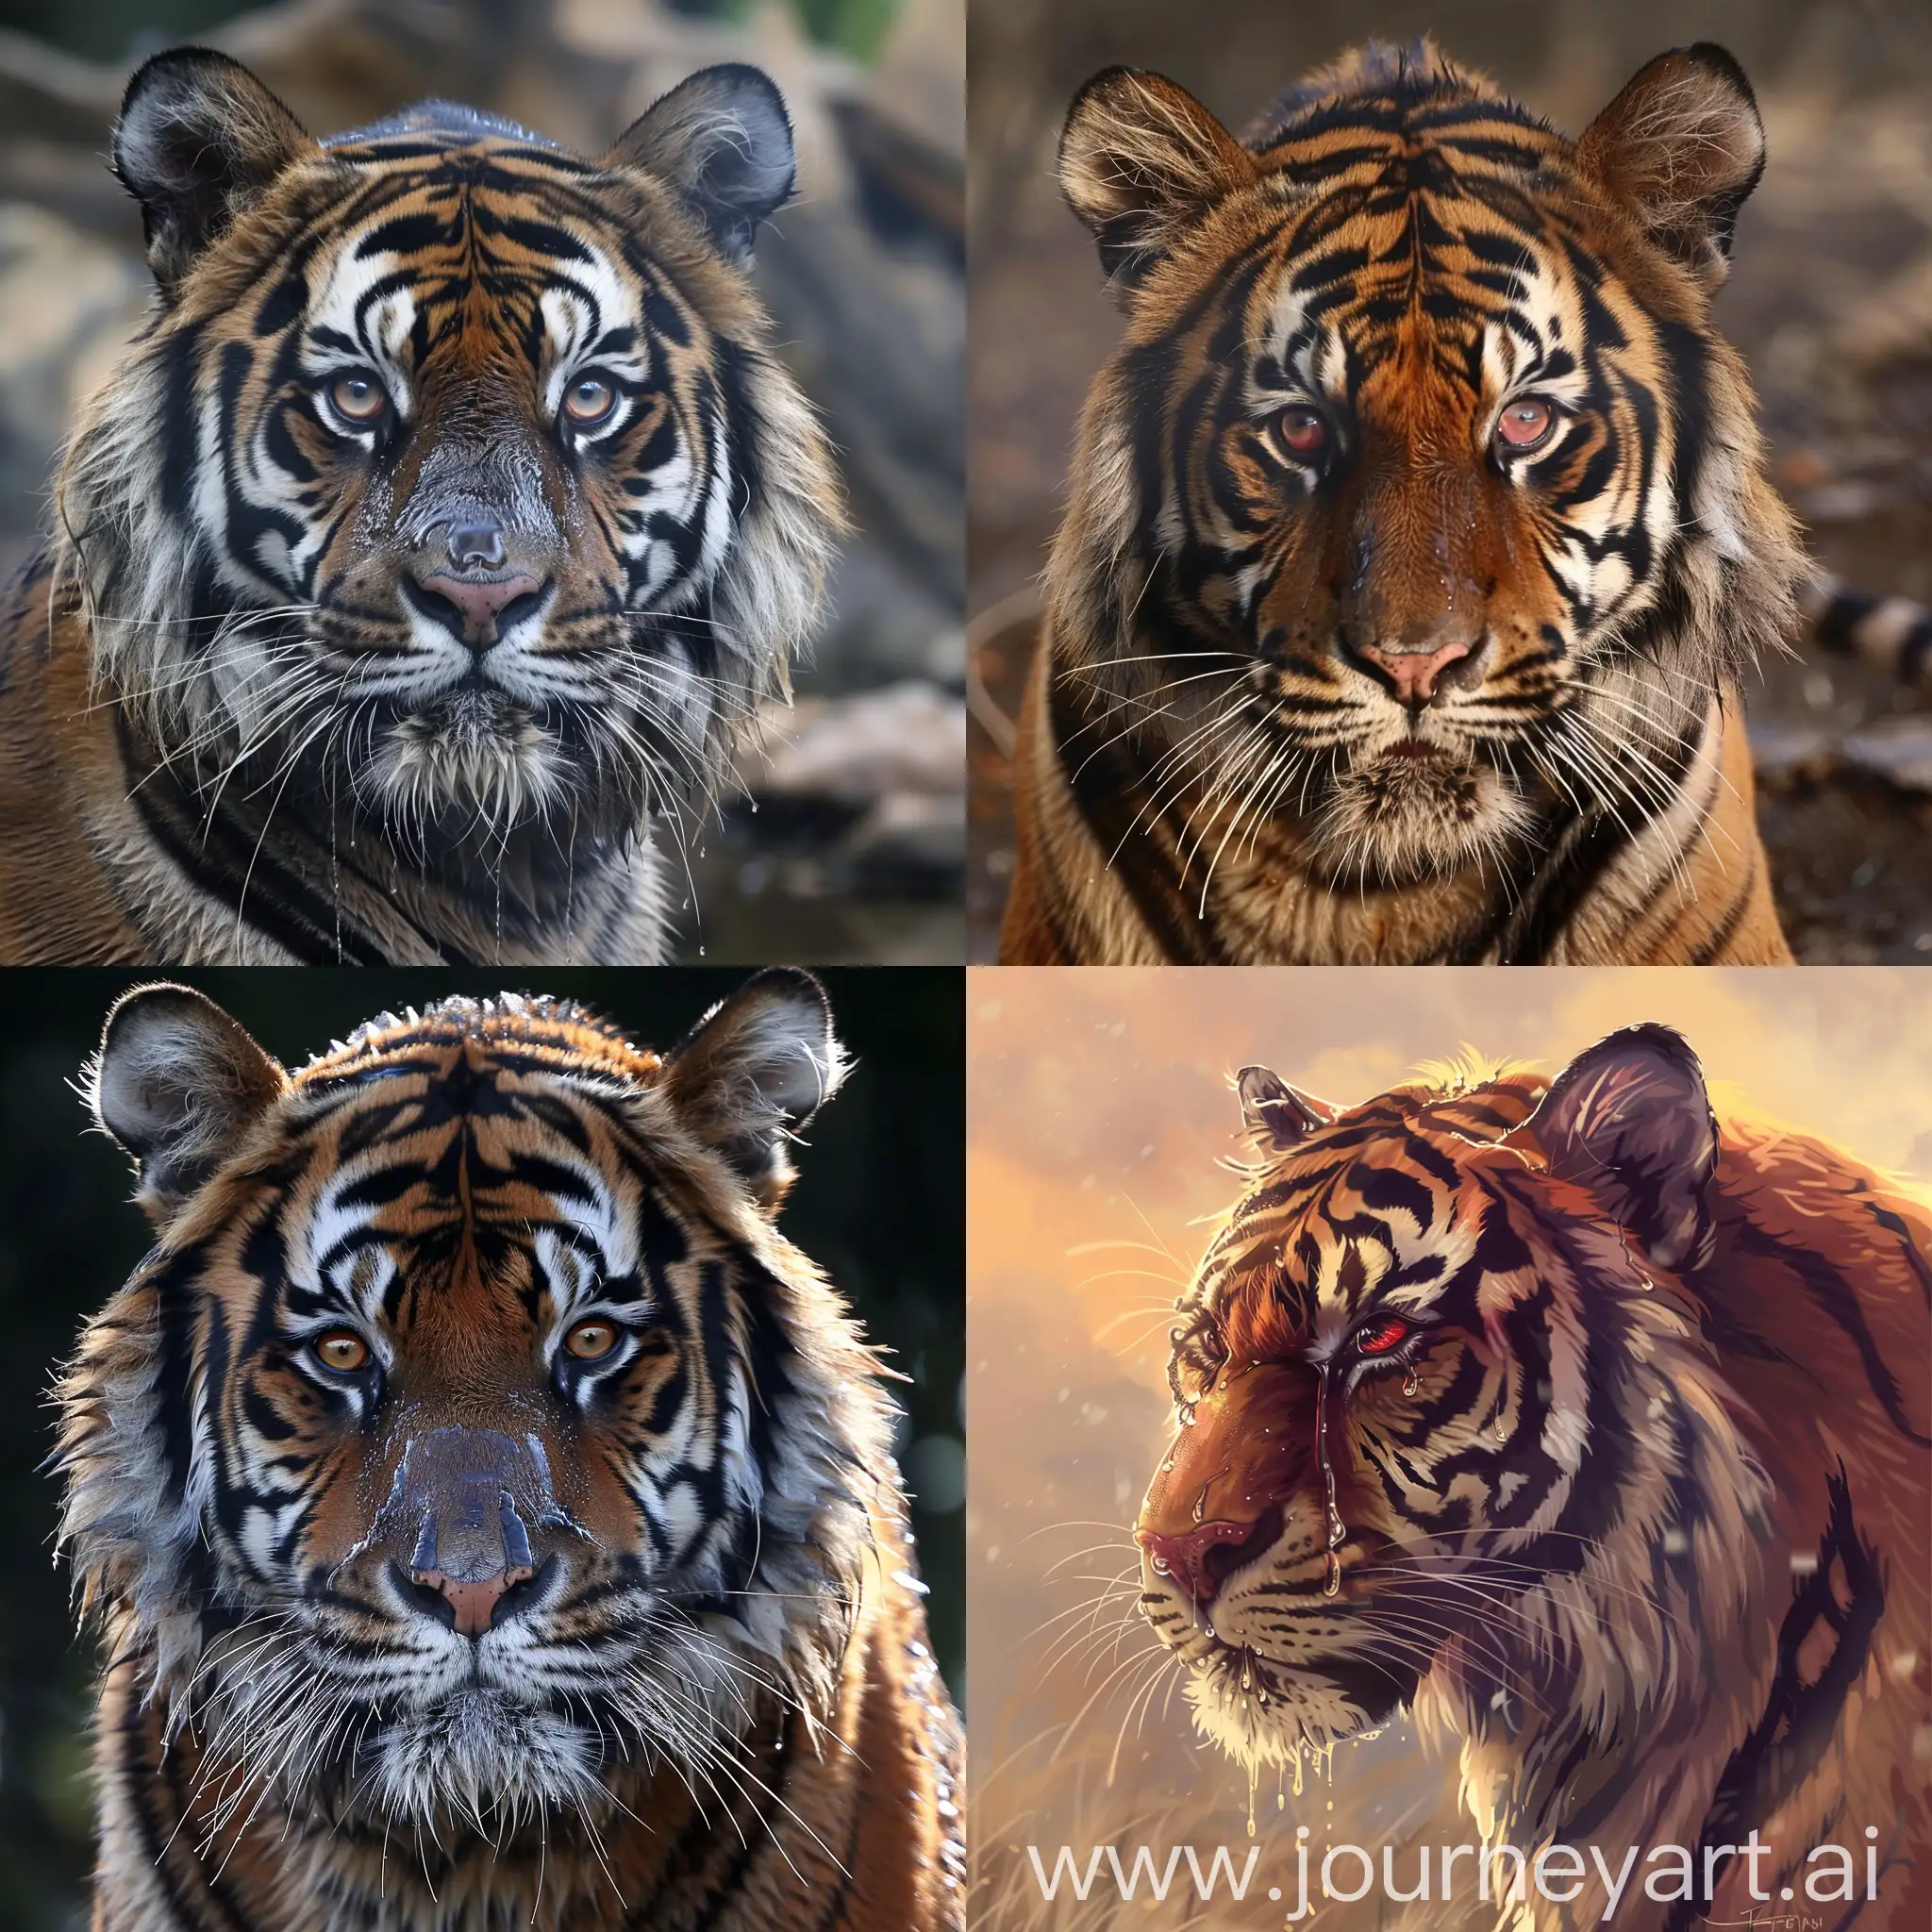 Royal Bengal tiger crying, crying eyes, sad, Royal Bengal tiger, emotional, red eyes, running nose, puffy eyes, Tears